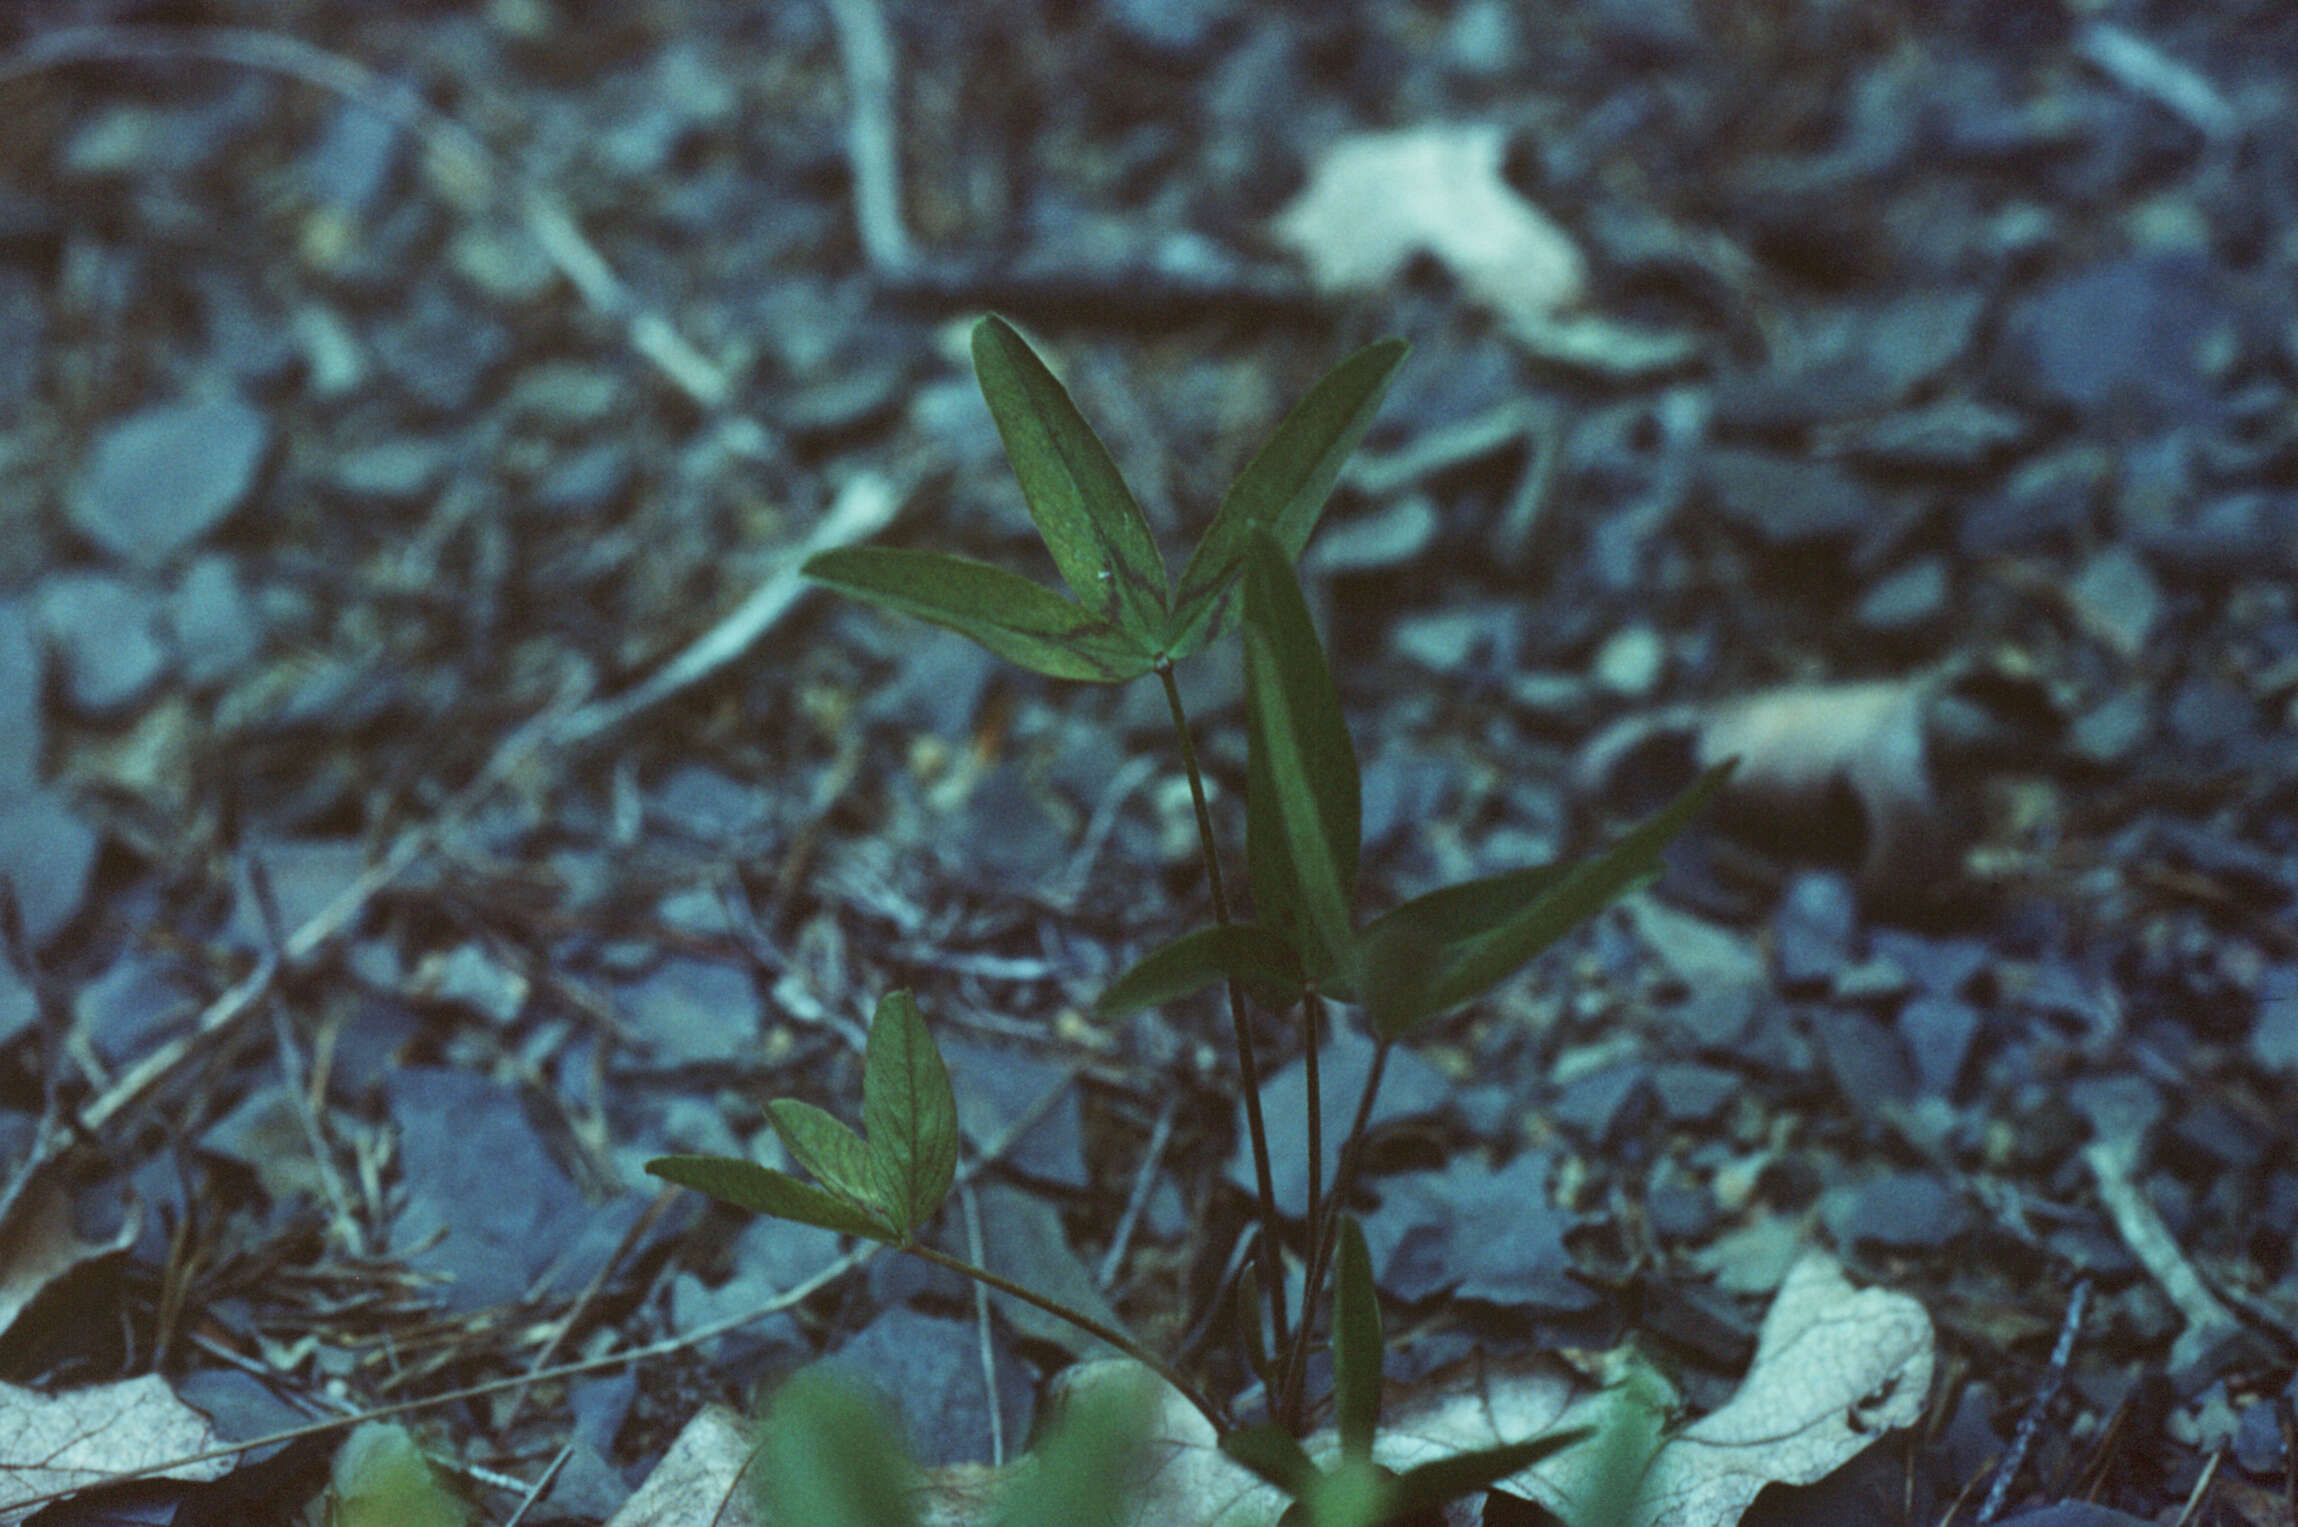 Image of Kates Mountain clover